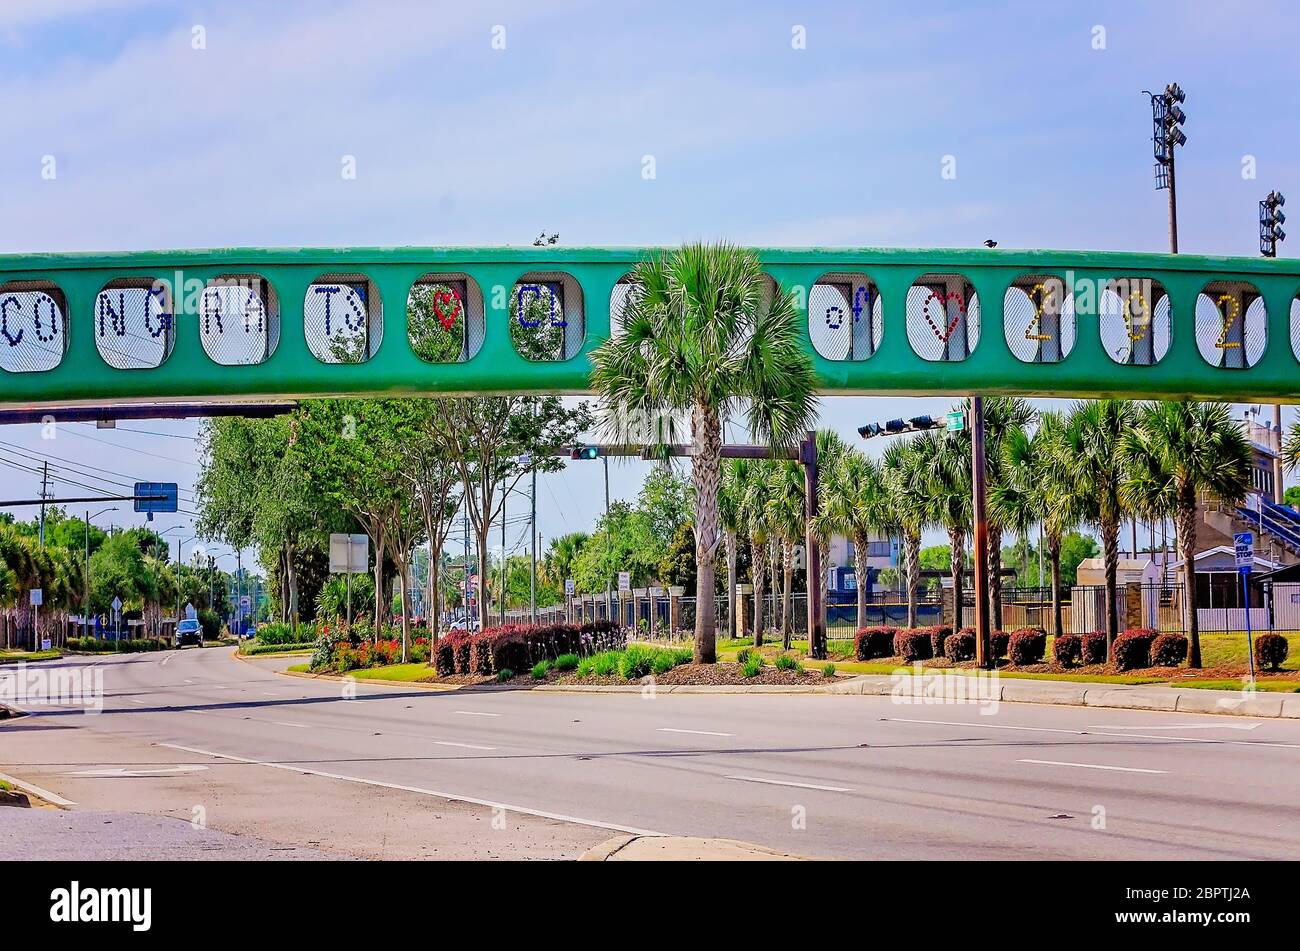 Le passage supérieur de l'école secondaire Gulf Breeze traversant la route 98 est décoré d'un panneau « Congrats Class of 2020 », le 16 mai 2020, à Gulf Breeze, en Floride. Banque D'Images